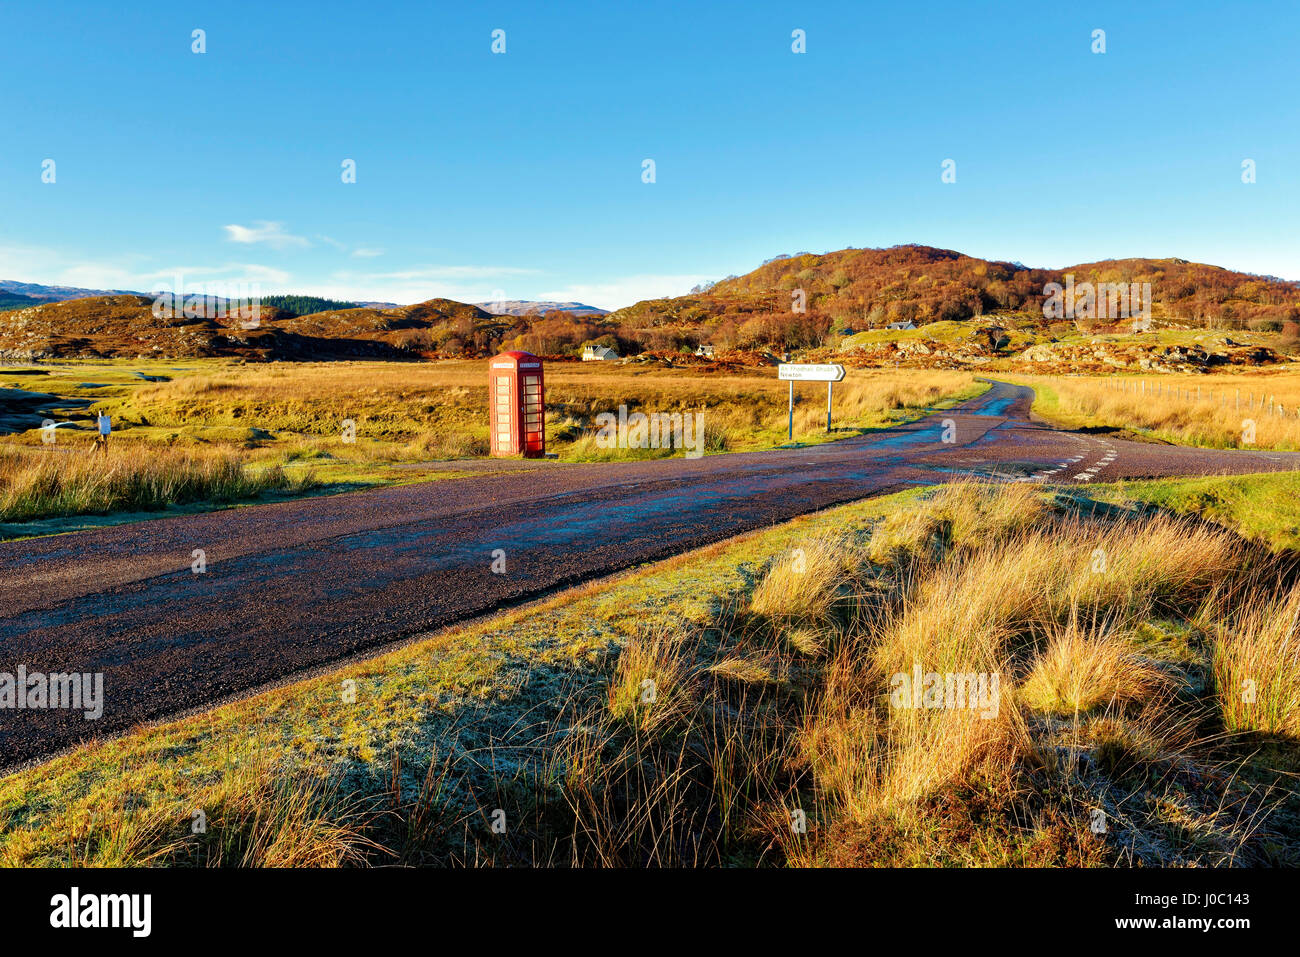 Vue d'automne d'une boîte de téléphone rouge sur le côté d'une route calme, 38 maures de la Scottish Highlands, Ecosse, Royaume-Uni Banque D'Images